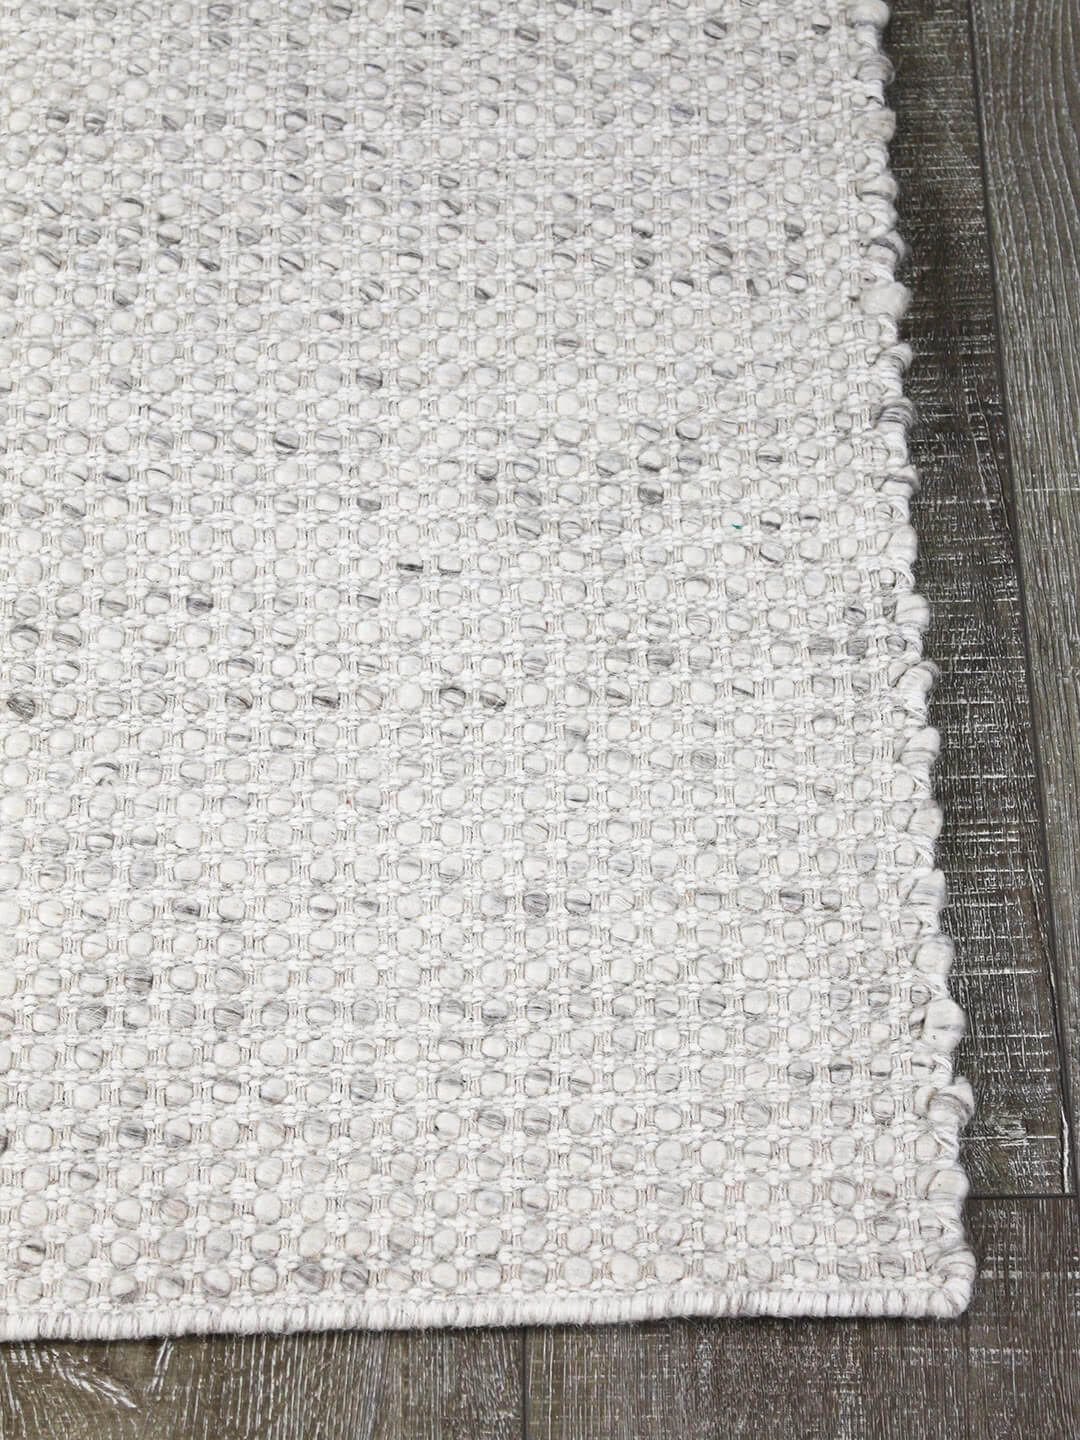 Kober flatweave pure 100% wool rug in grey silver corner image with floorbaords